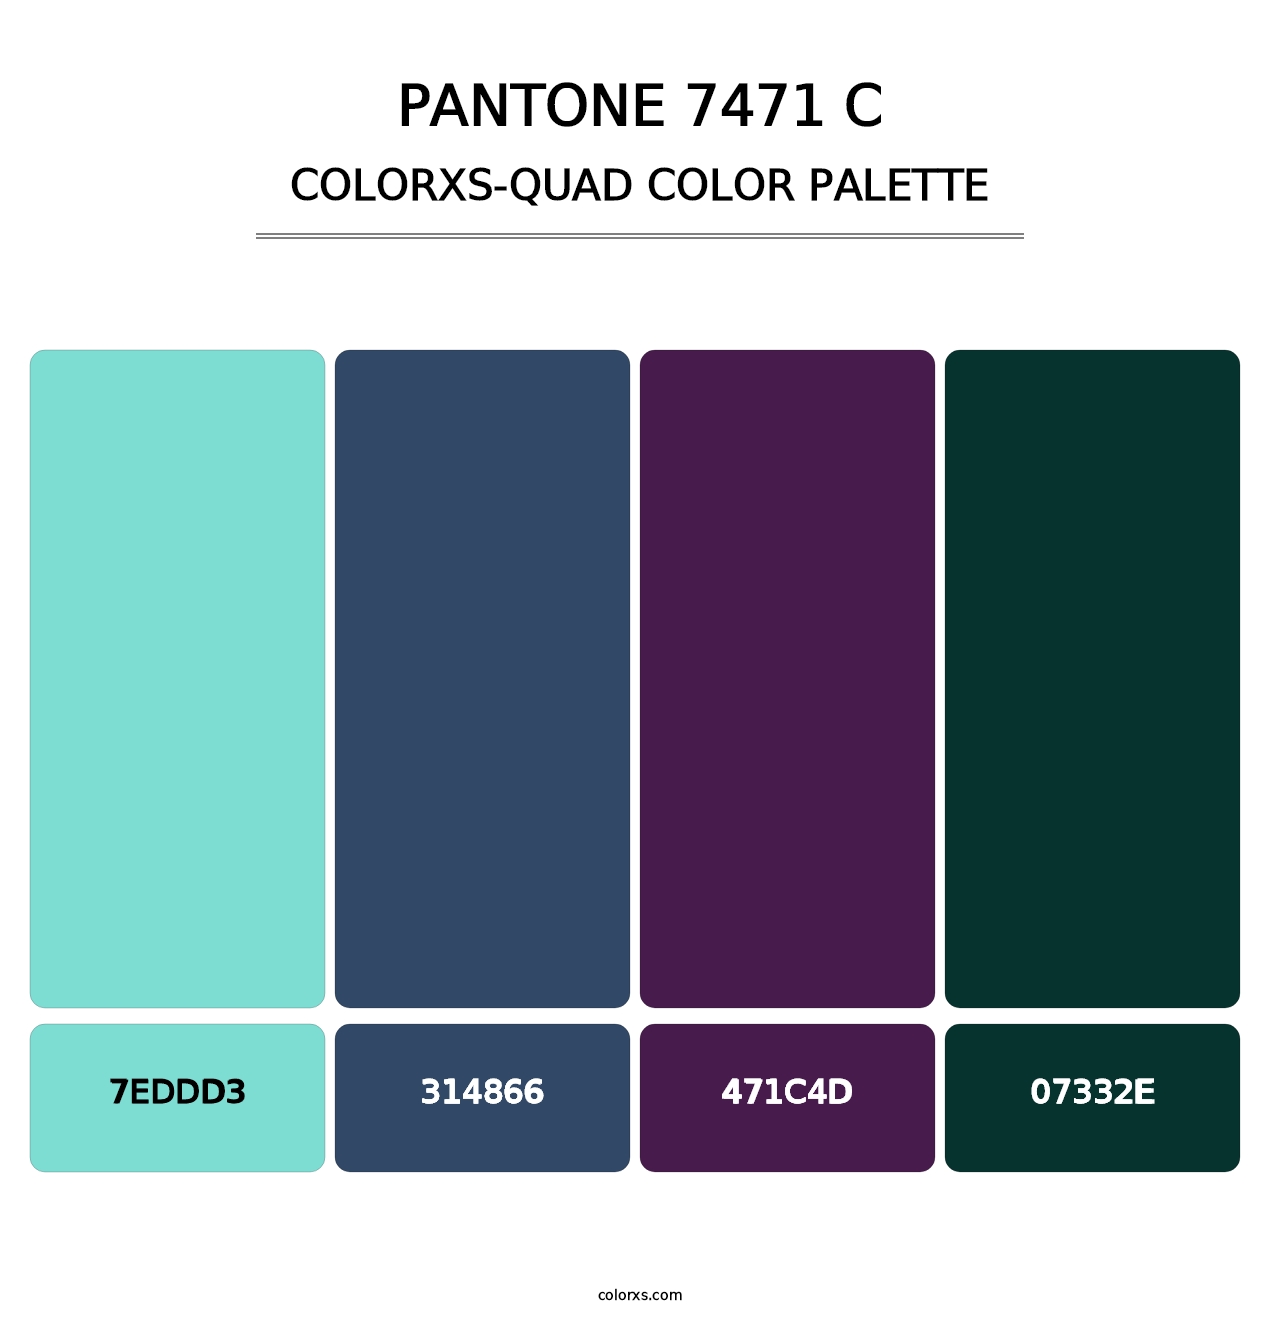 PANTONE 7471 C - Colorxs Quad Palette